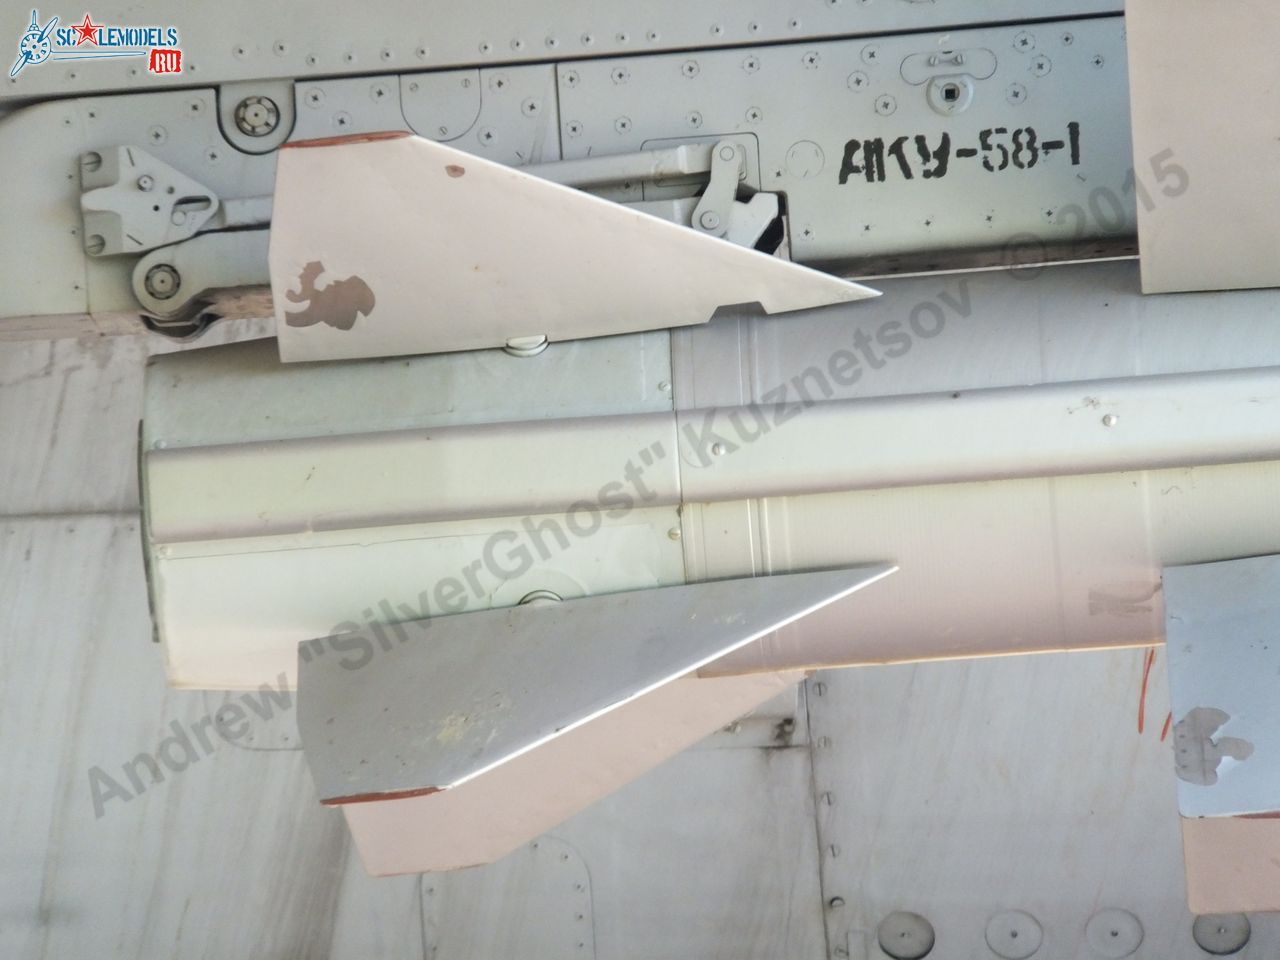 Kh-58 missile_0002.jpg